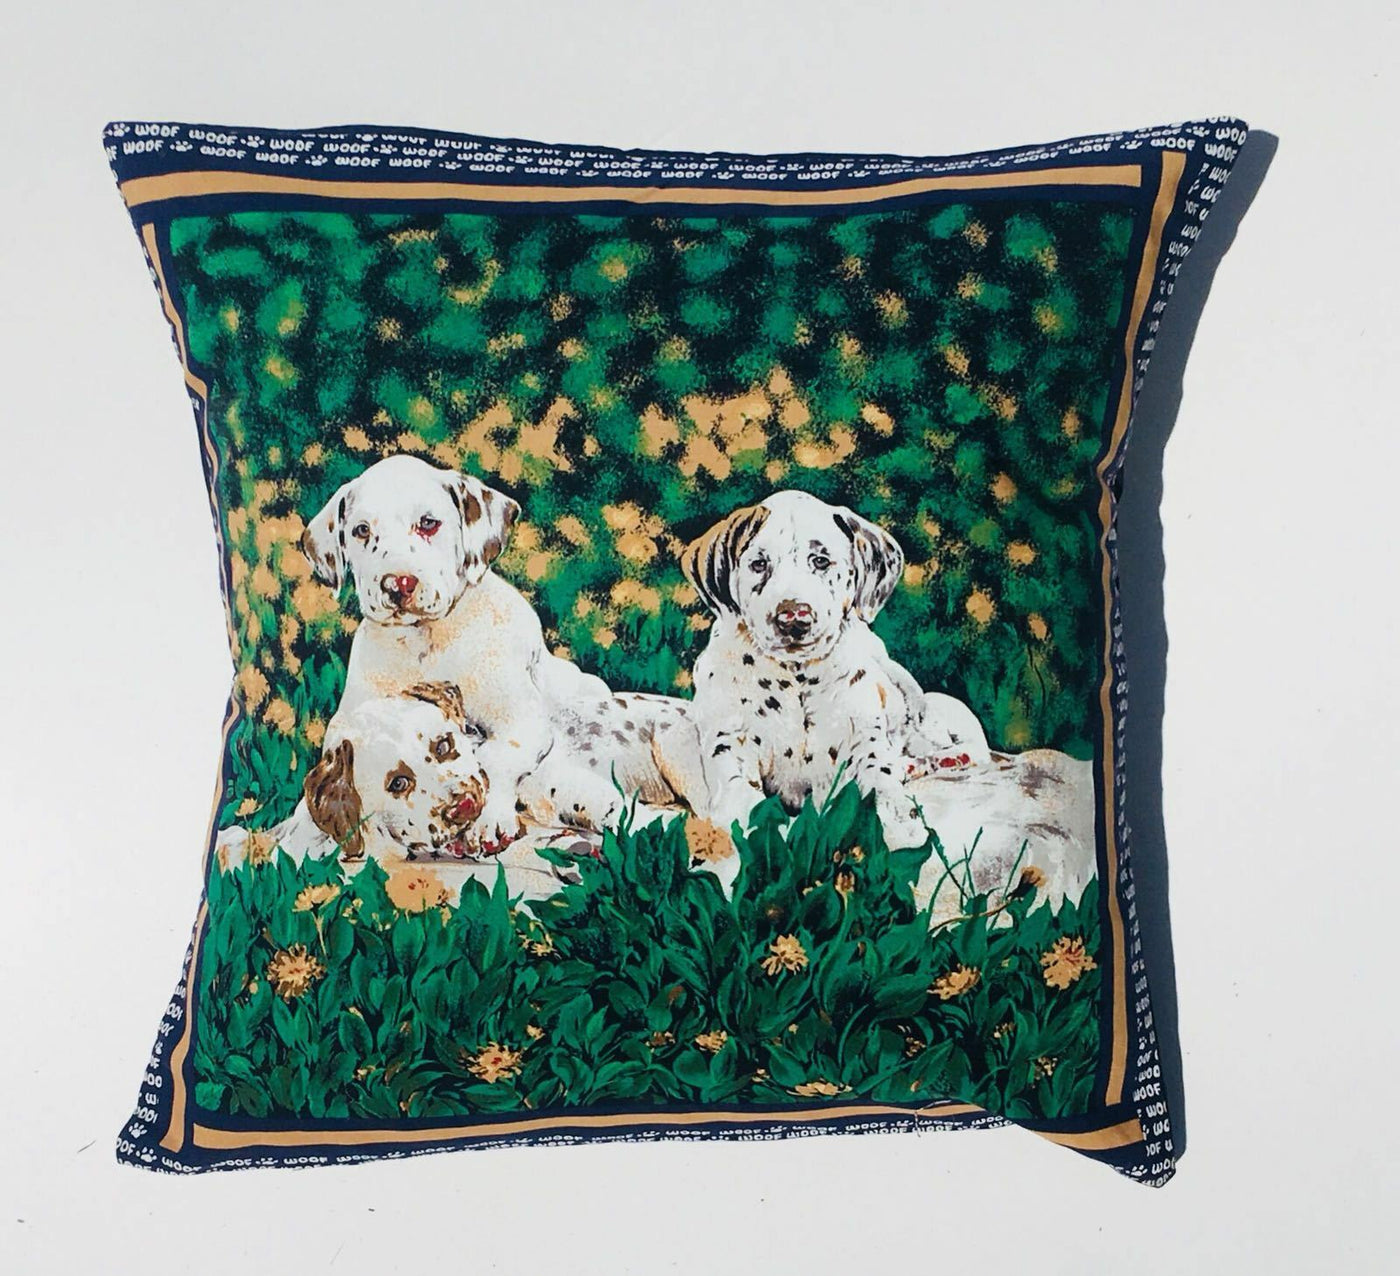 Dalmatian Dog Cushion Cover - Case fits 18" x 18" cushion